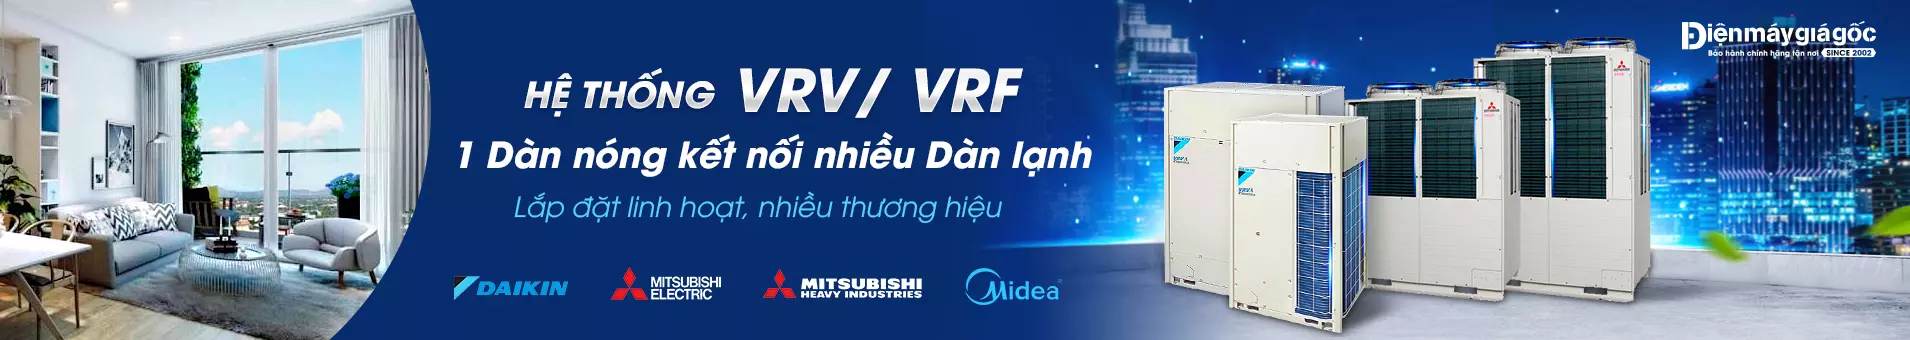 Hệ thốn điều hòa trung tâm VRV VRF lắp đặt chuyên nghiệp cho công trình của bạn.